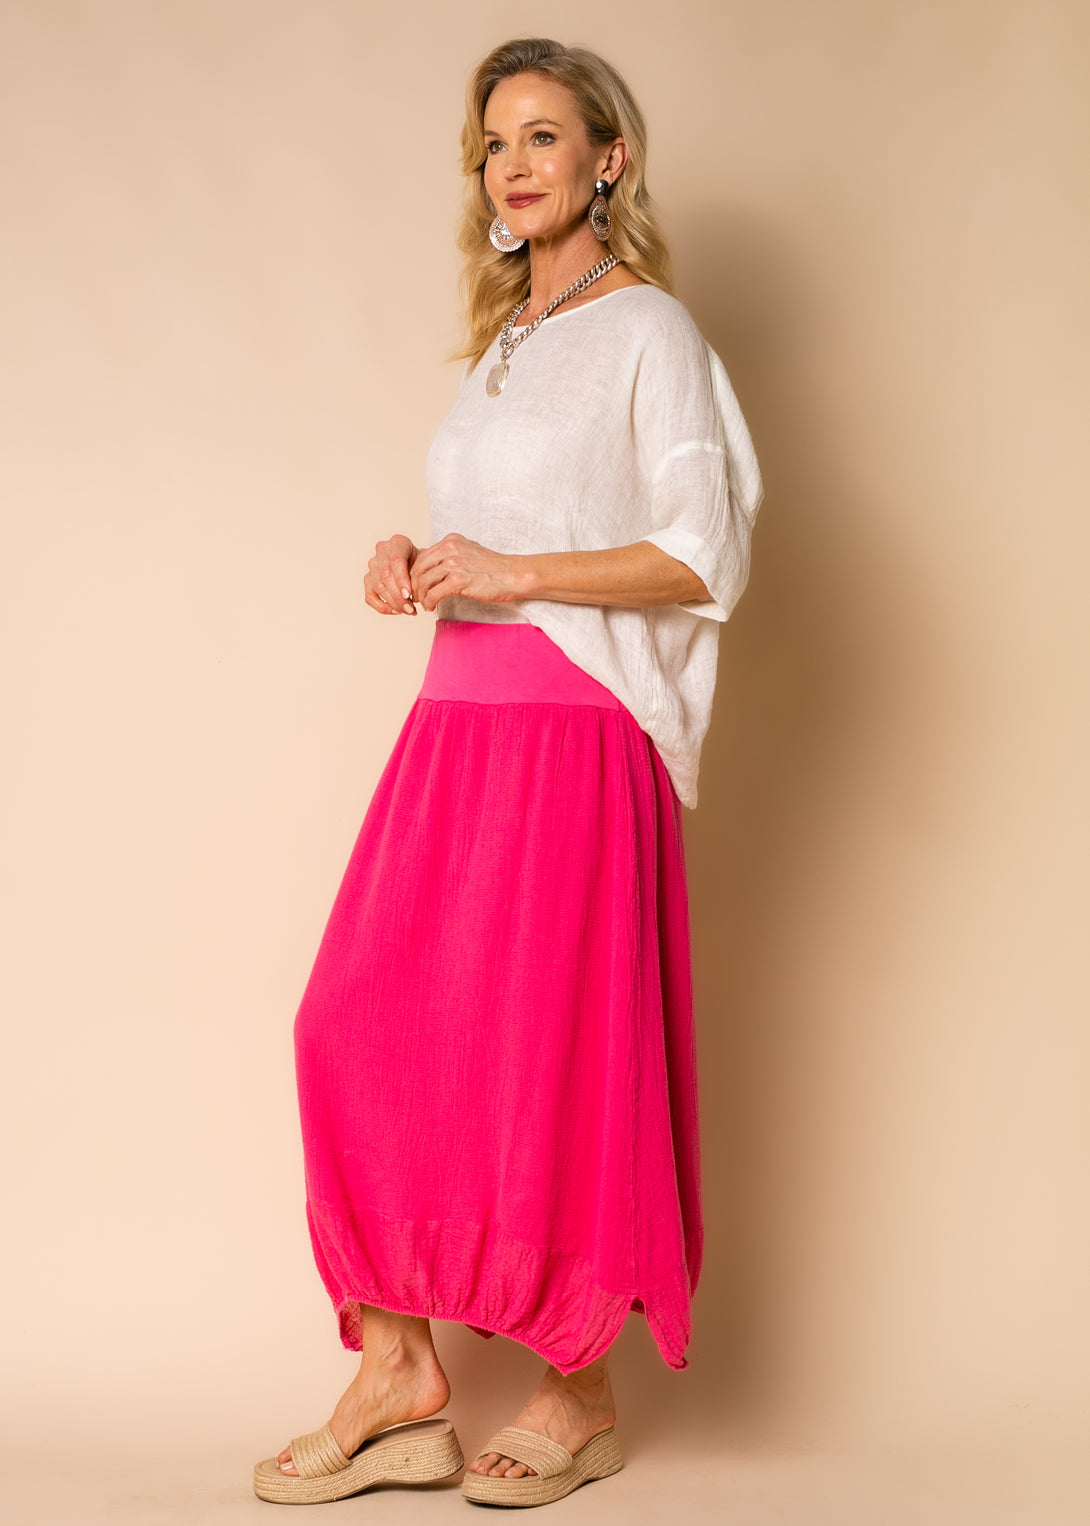 Leela Linen Skirt in Raspberry Sorbet - Imagine Fashion